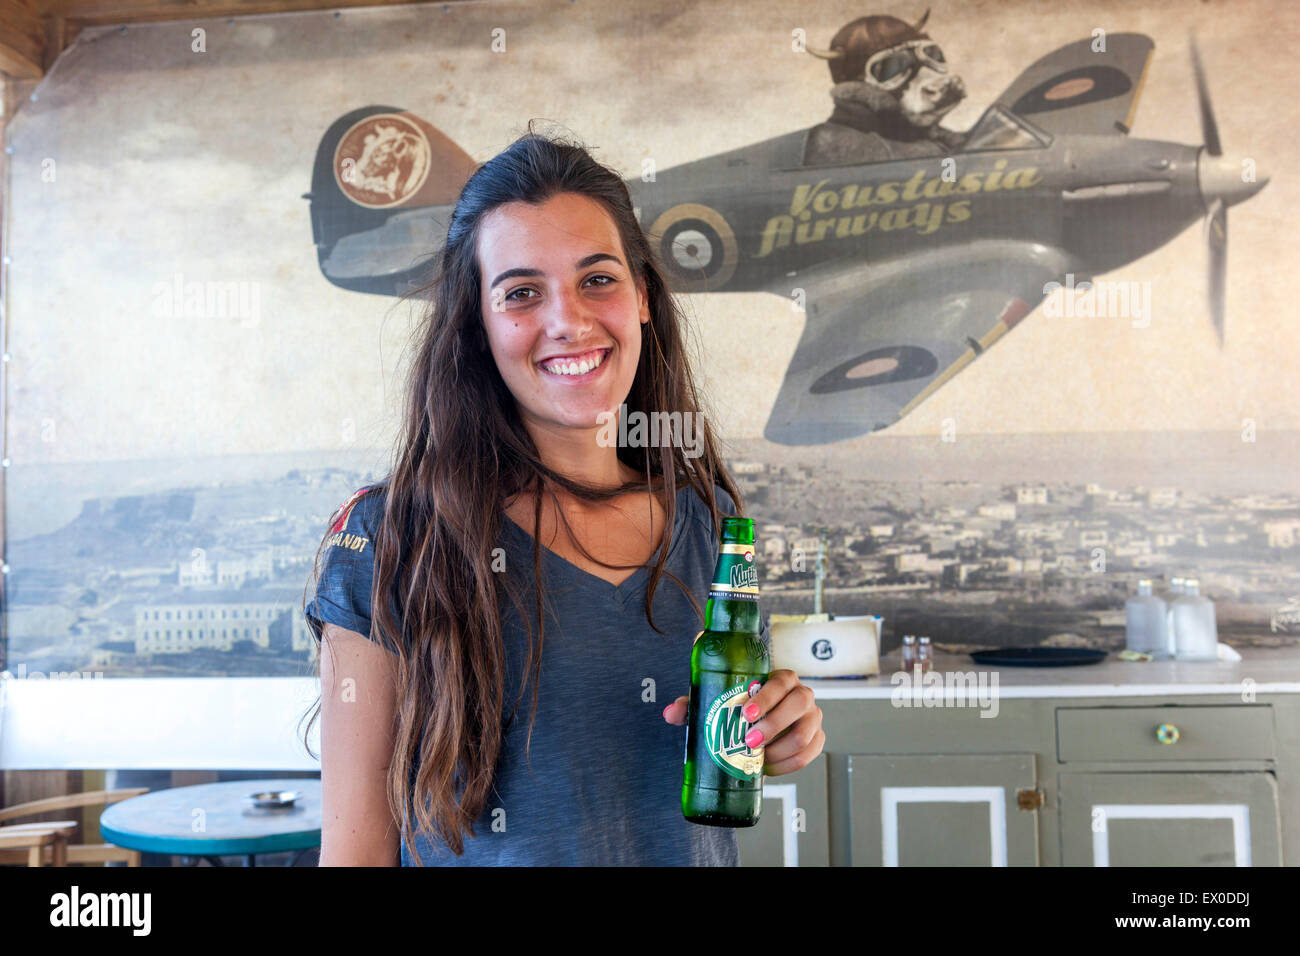 Femme serveur dans un bar, la bière Mythos, Rethymno, Crète, Grèce Banque D'Images